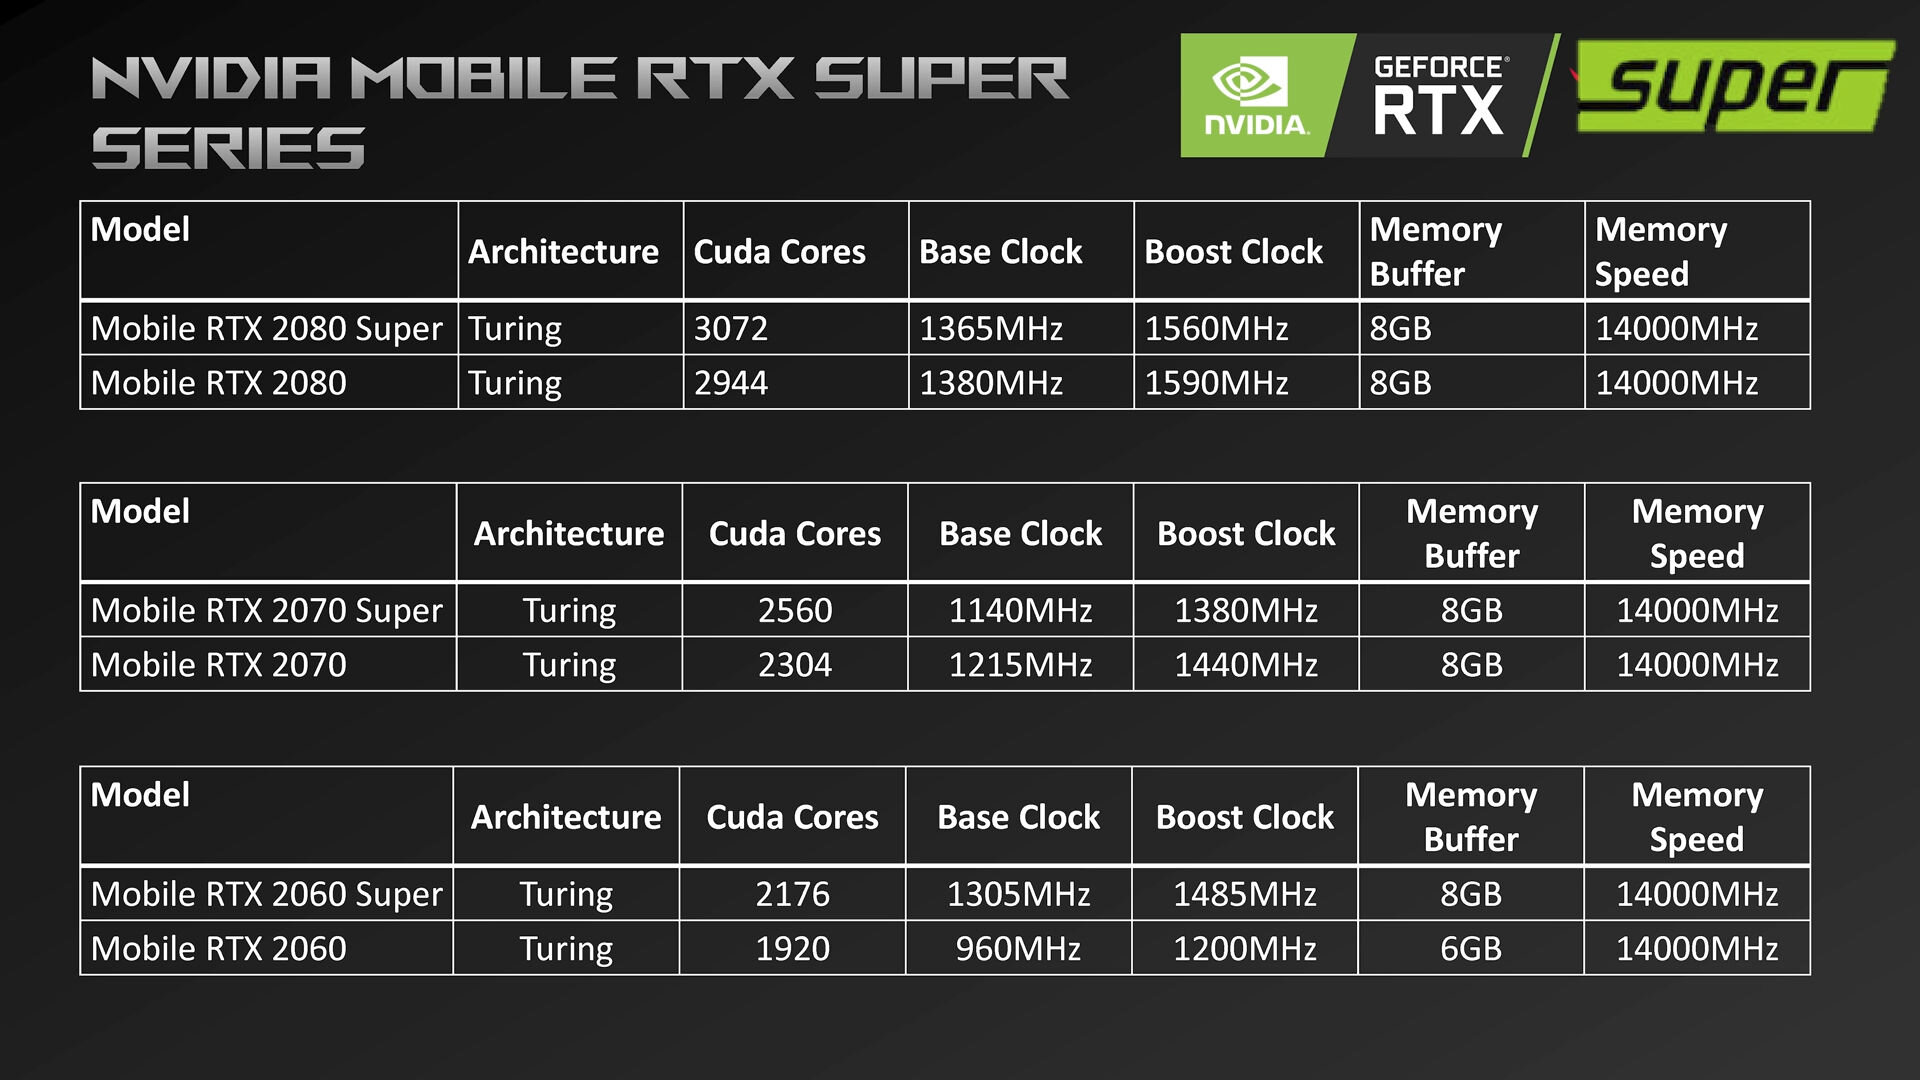 Asus-Folie nennt Mobile RTX 2060 Super